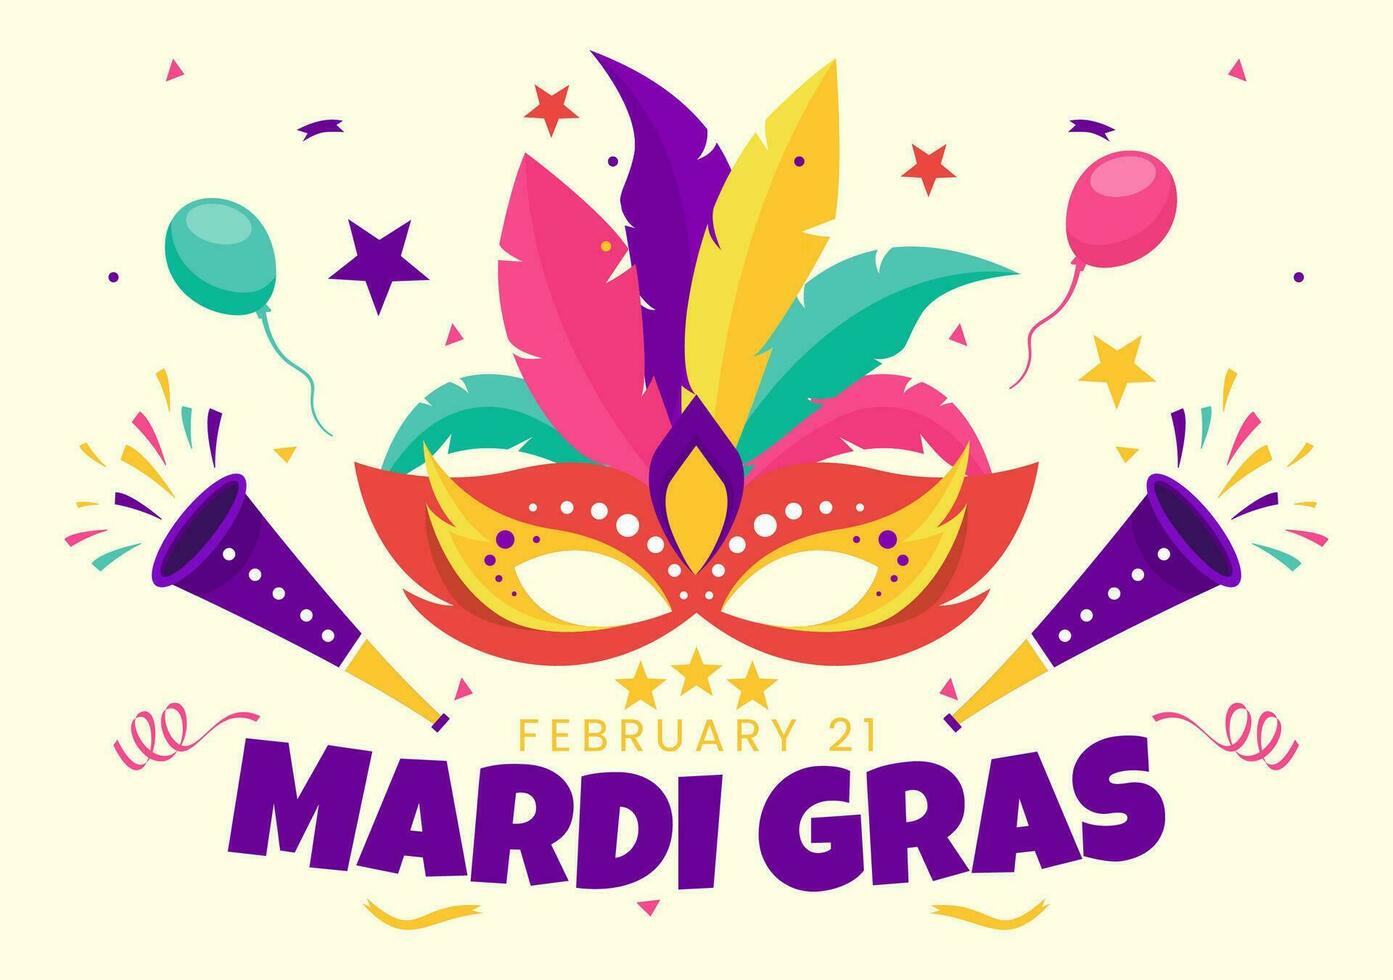 mardi gras carnaval vector ilustración. Traducción es francés para grasa martes. festival con mascaras, maracas, guitarra y plumas en púrpura antecedentes